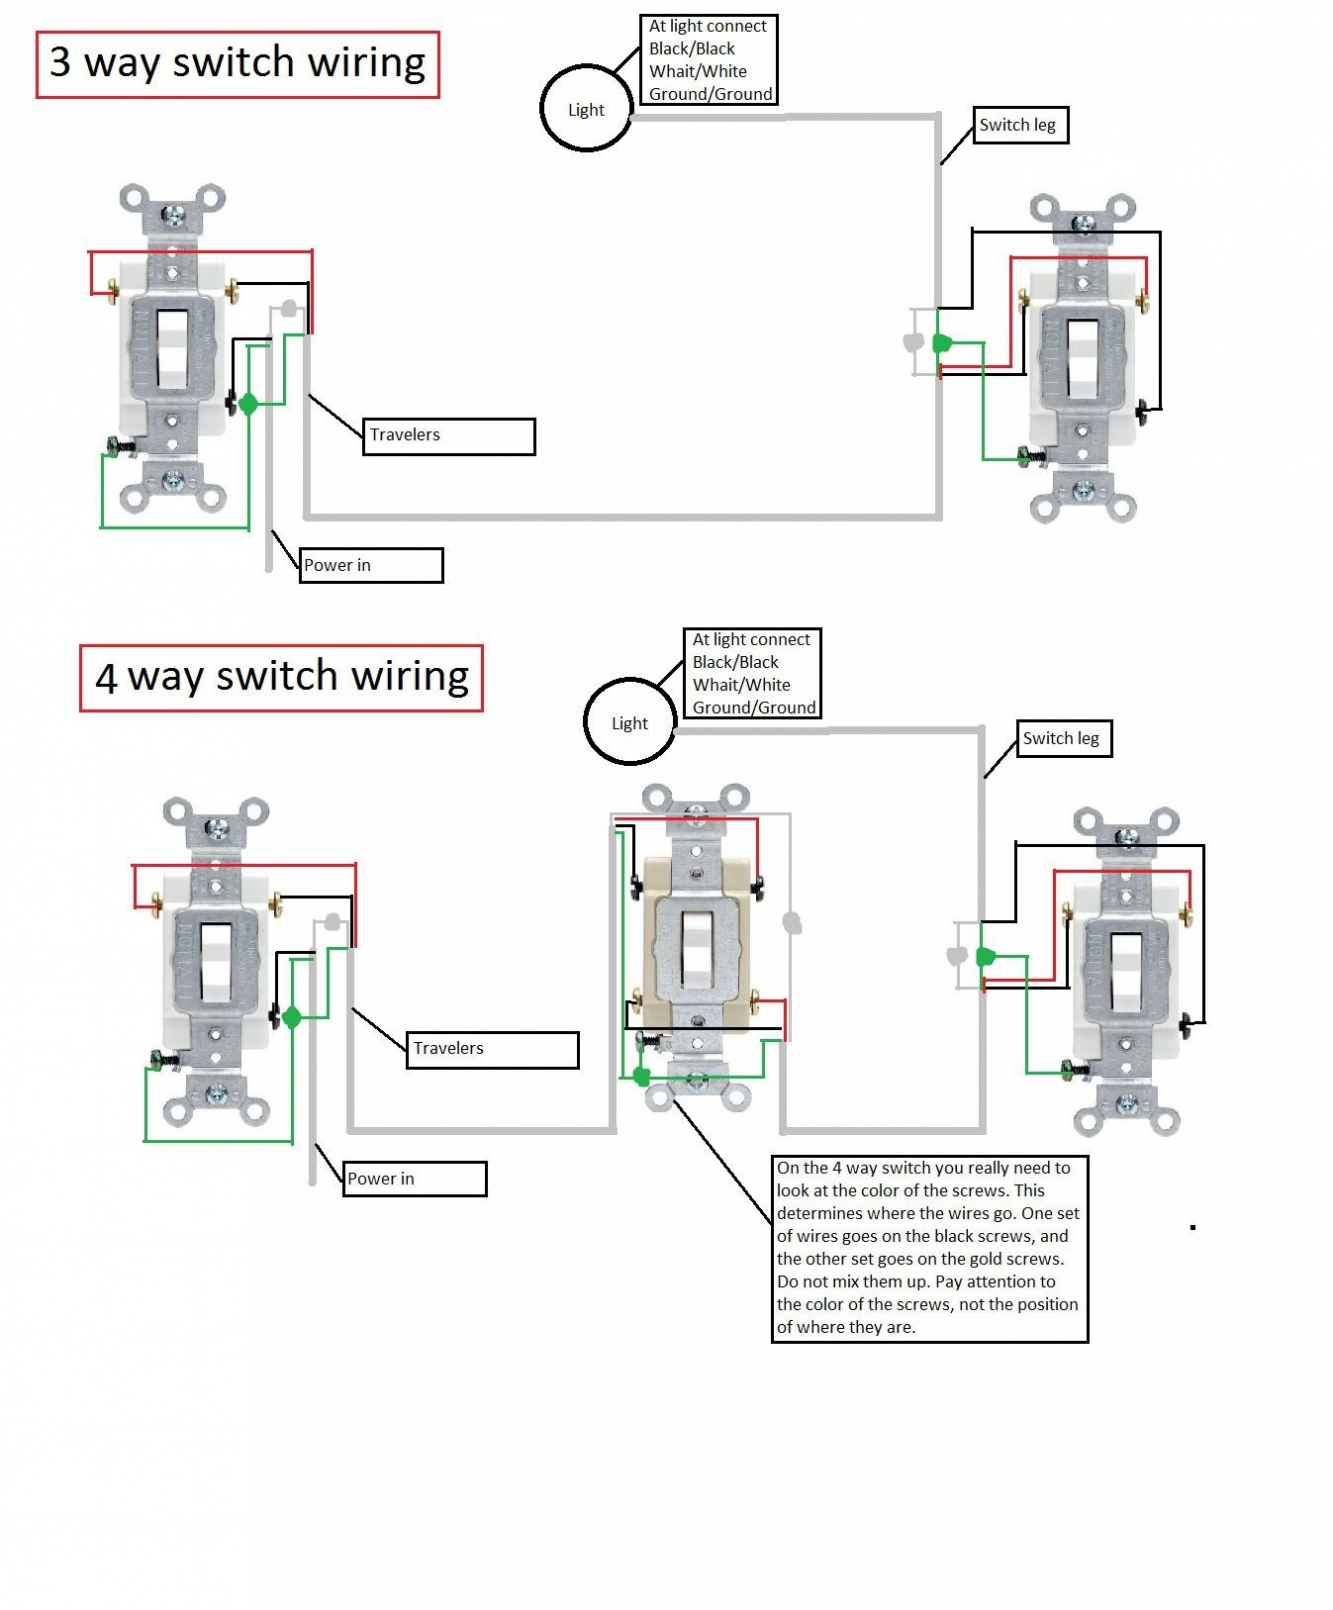 3 Way Light Switch Wiring Diagram Pdf | Wiring Diagram - 3 Way Switch Wiring Diagram Pdf